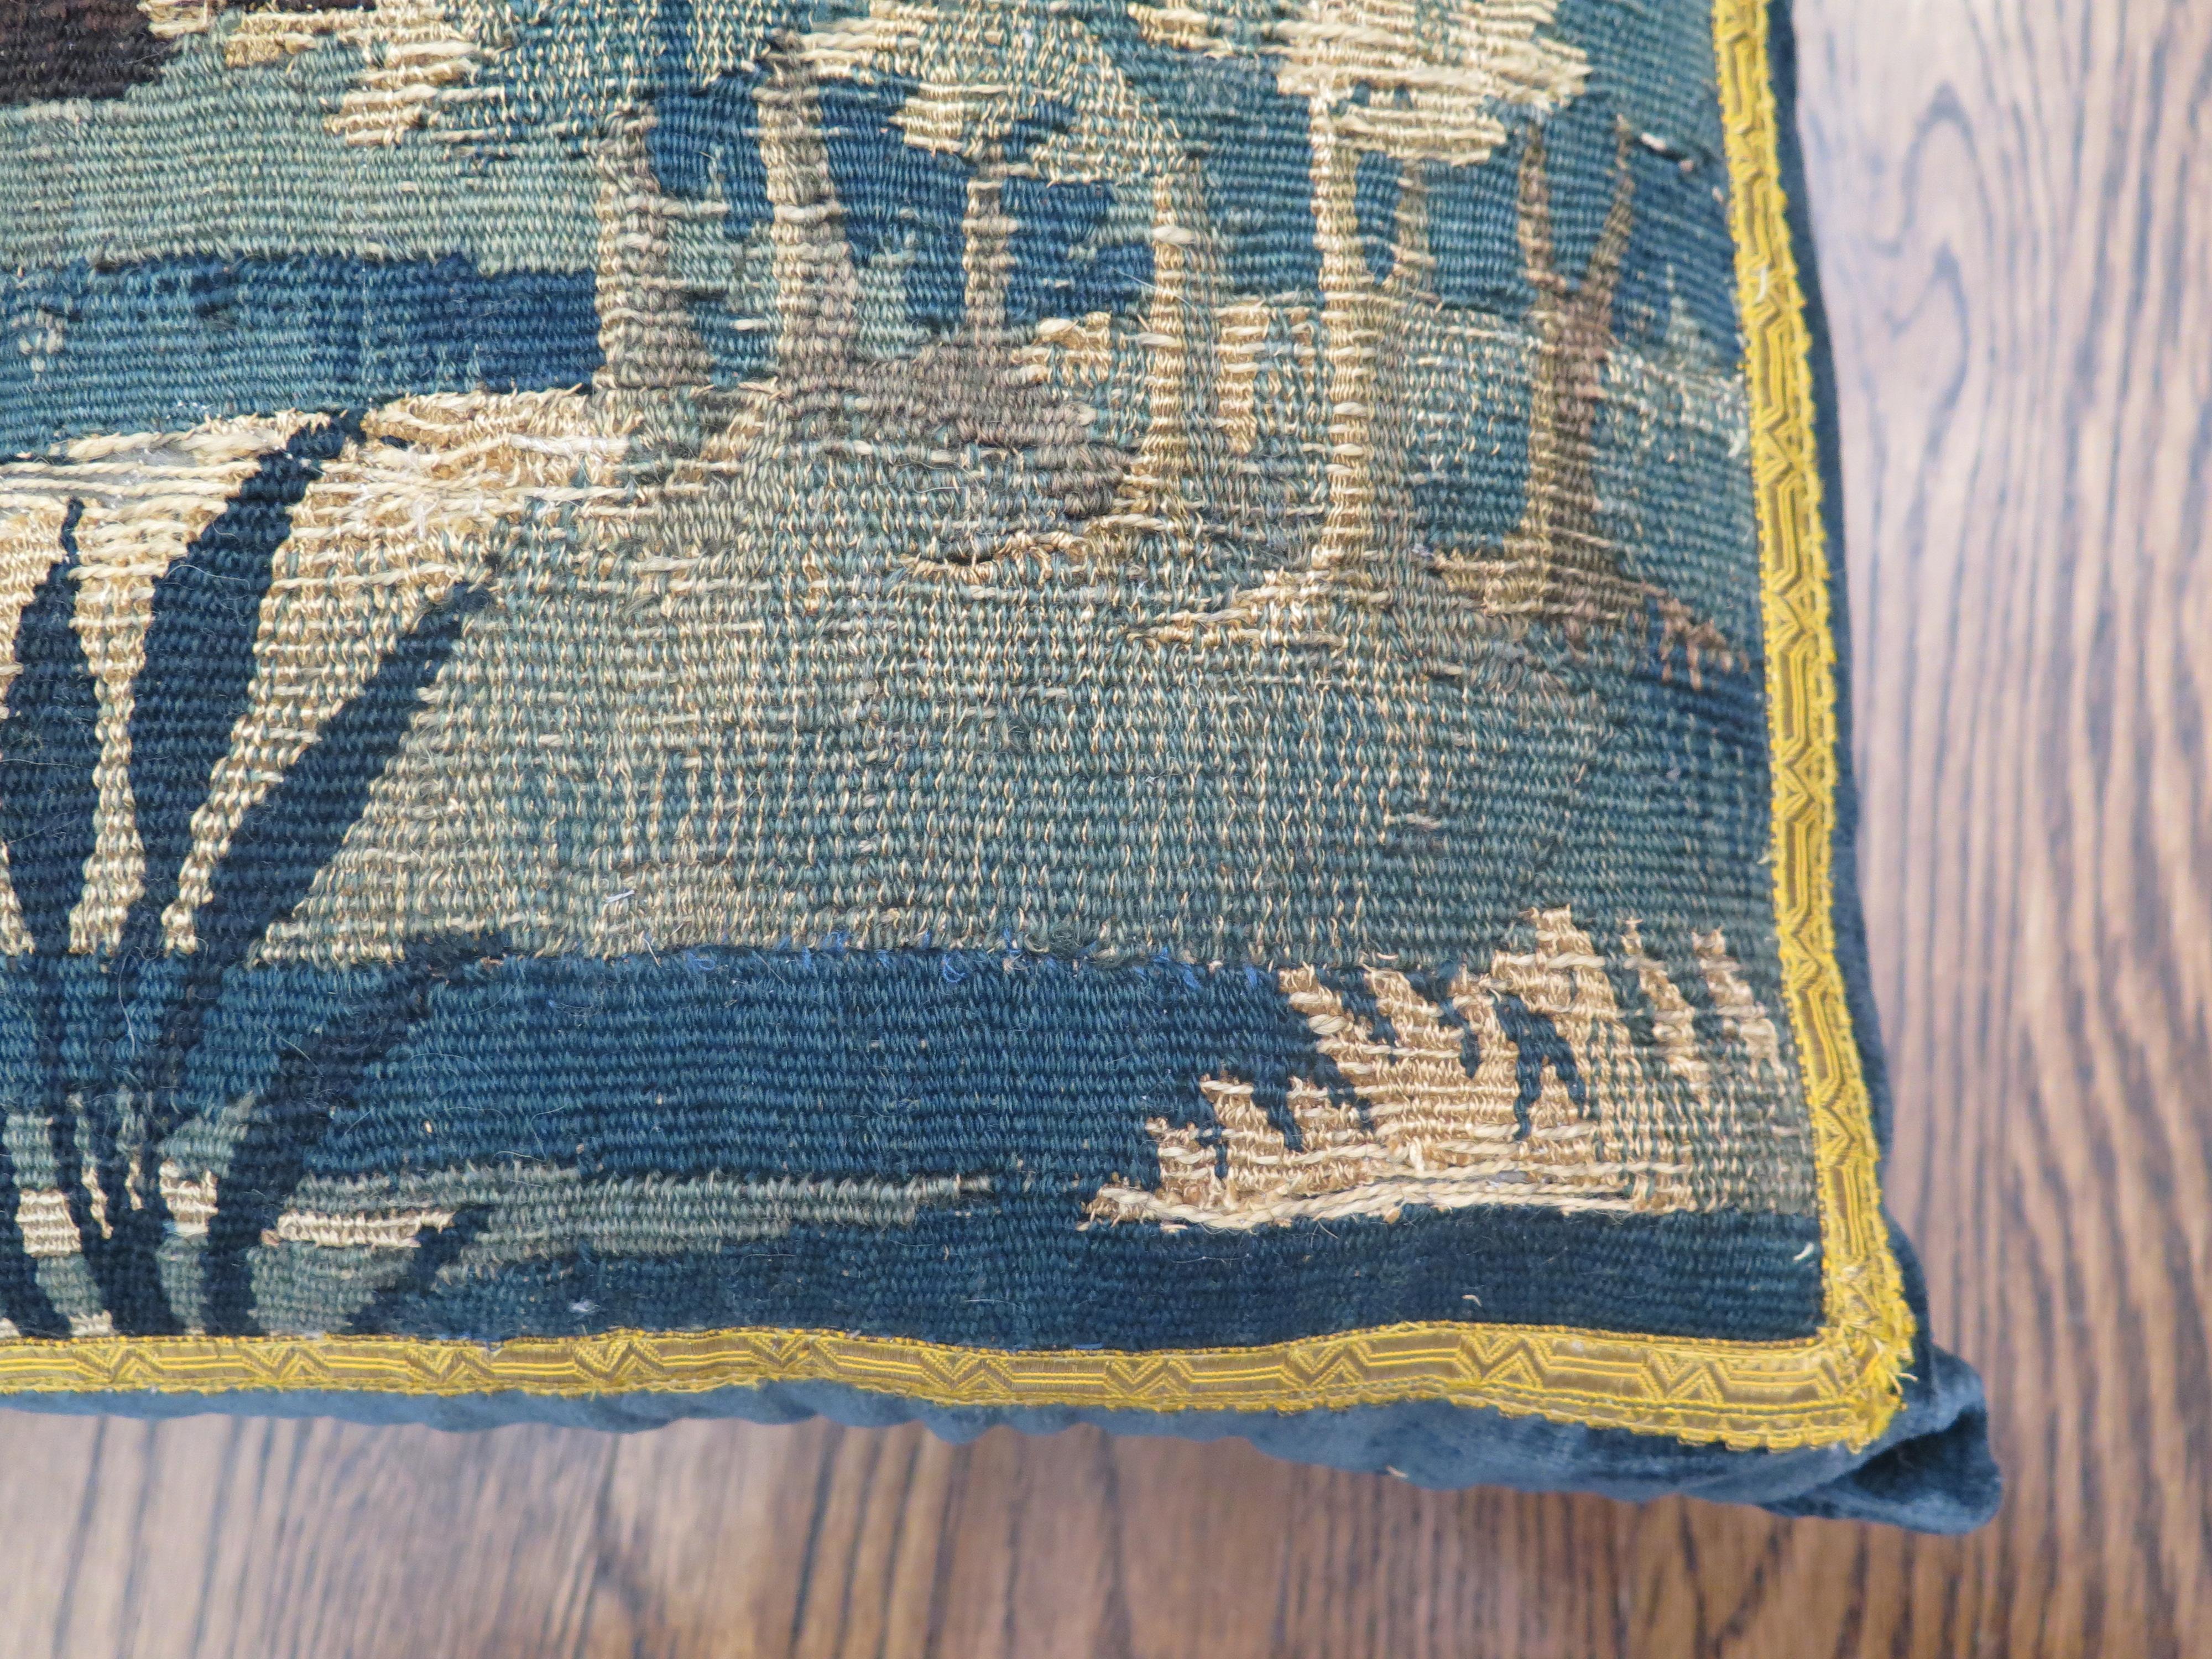 Custom 18th century verdure tapestry pillow in marine blue linen velvet and gold metallic trim. Down filled.